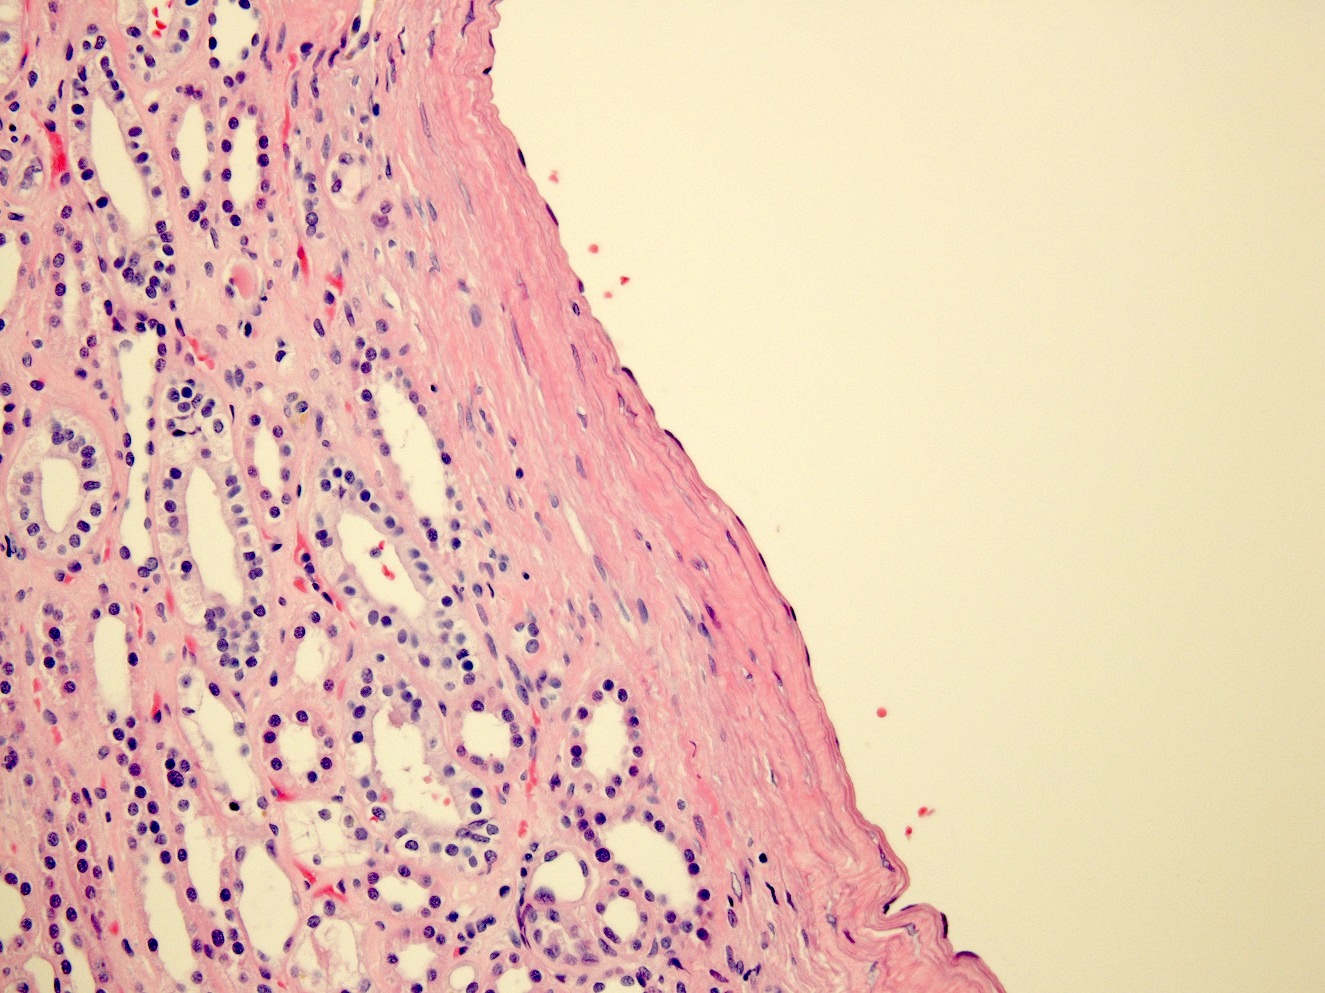 Flattened cyst wall epithelium